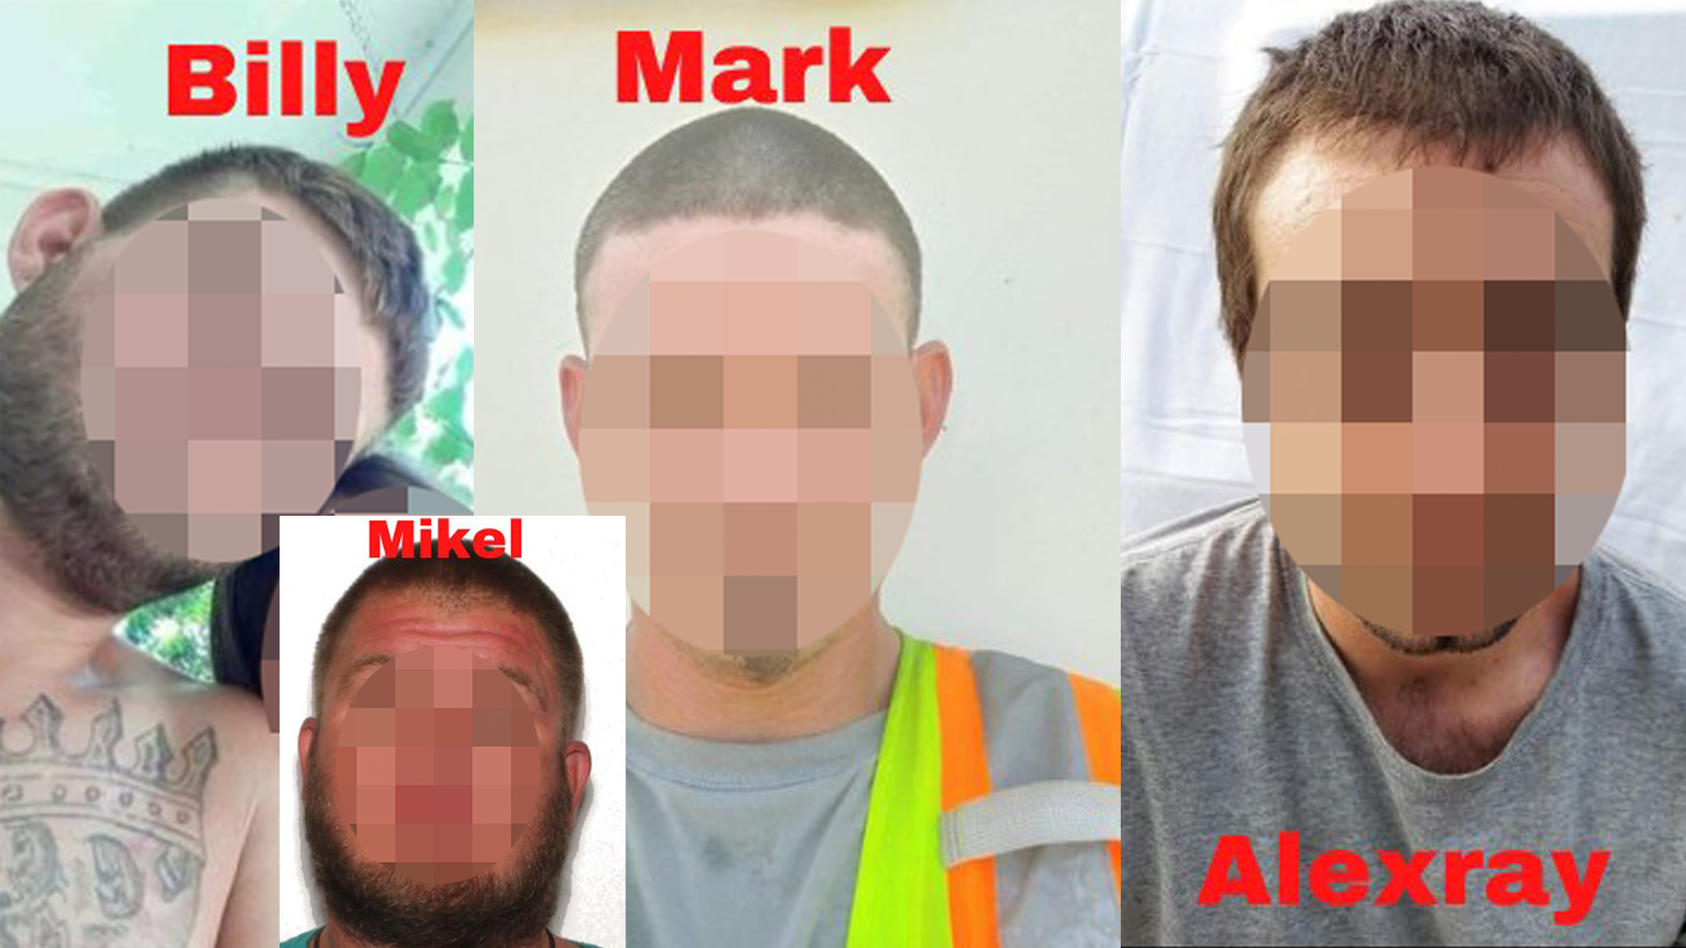 Mit diesen Fotos hatte die Polizei von Okmulgee nach den vermissten Männern gesucht. Nun die traurige Gewissheit: Alle vier sind tot und vermutlich Opfer eines Verbrechens geworden.